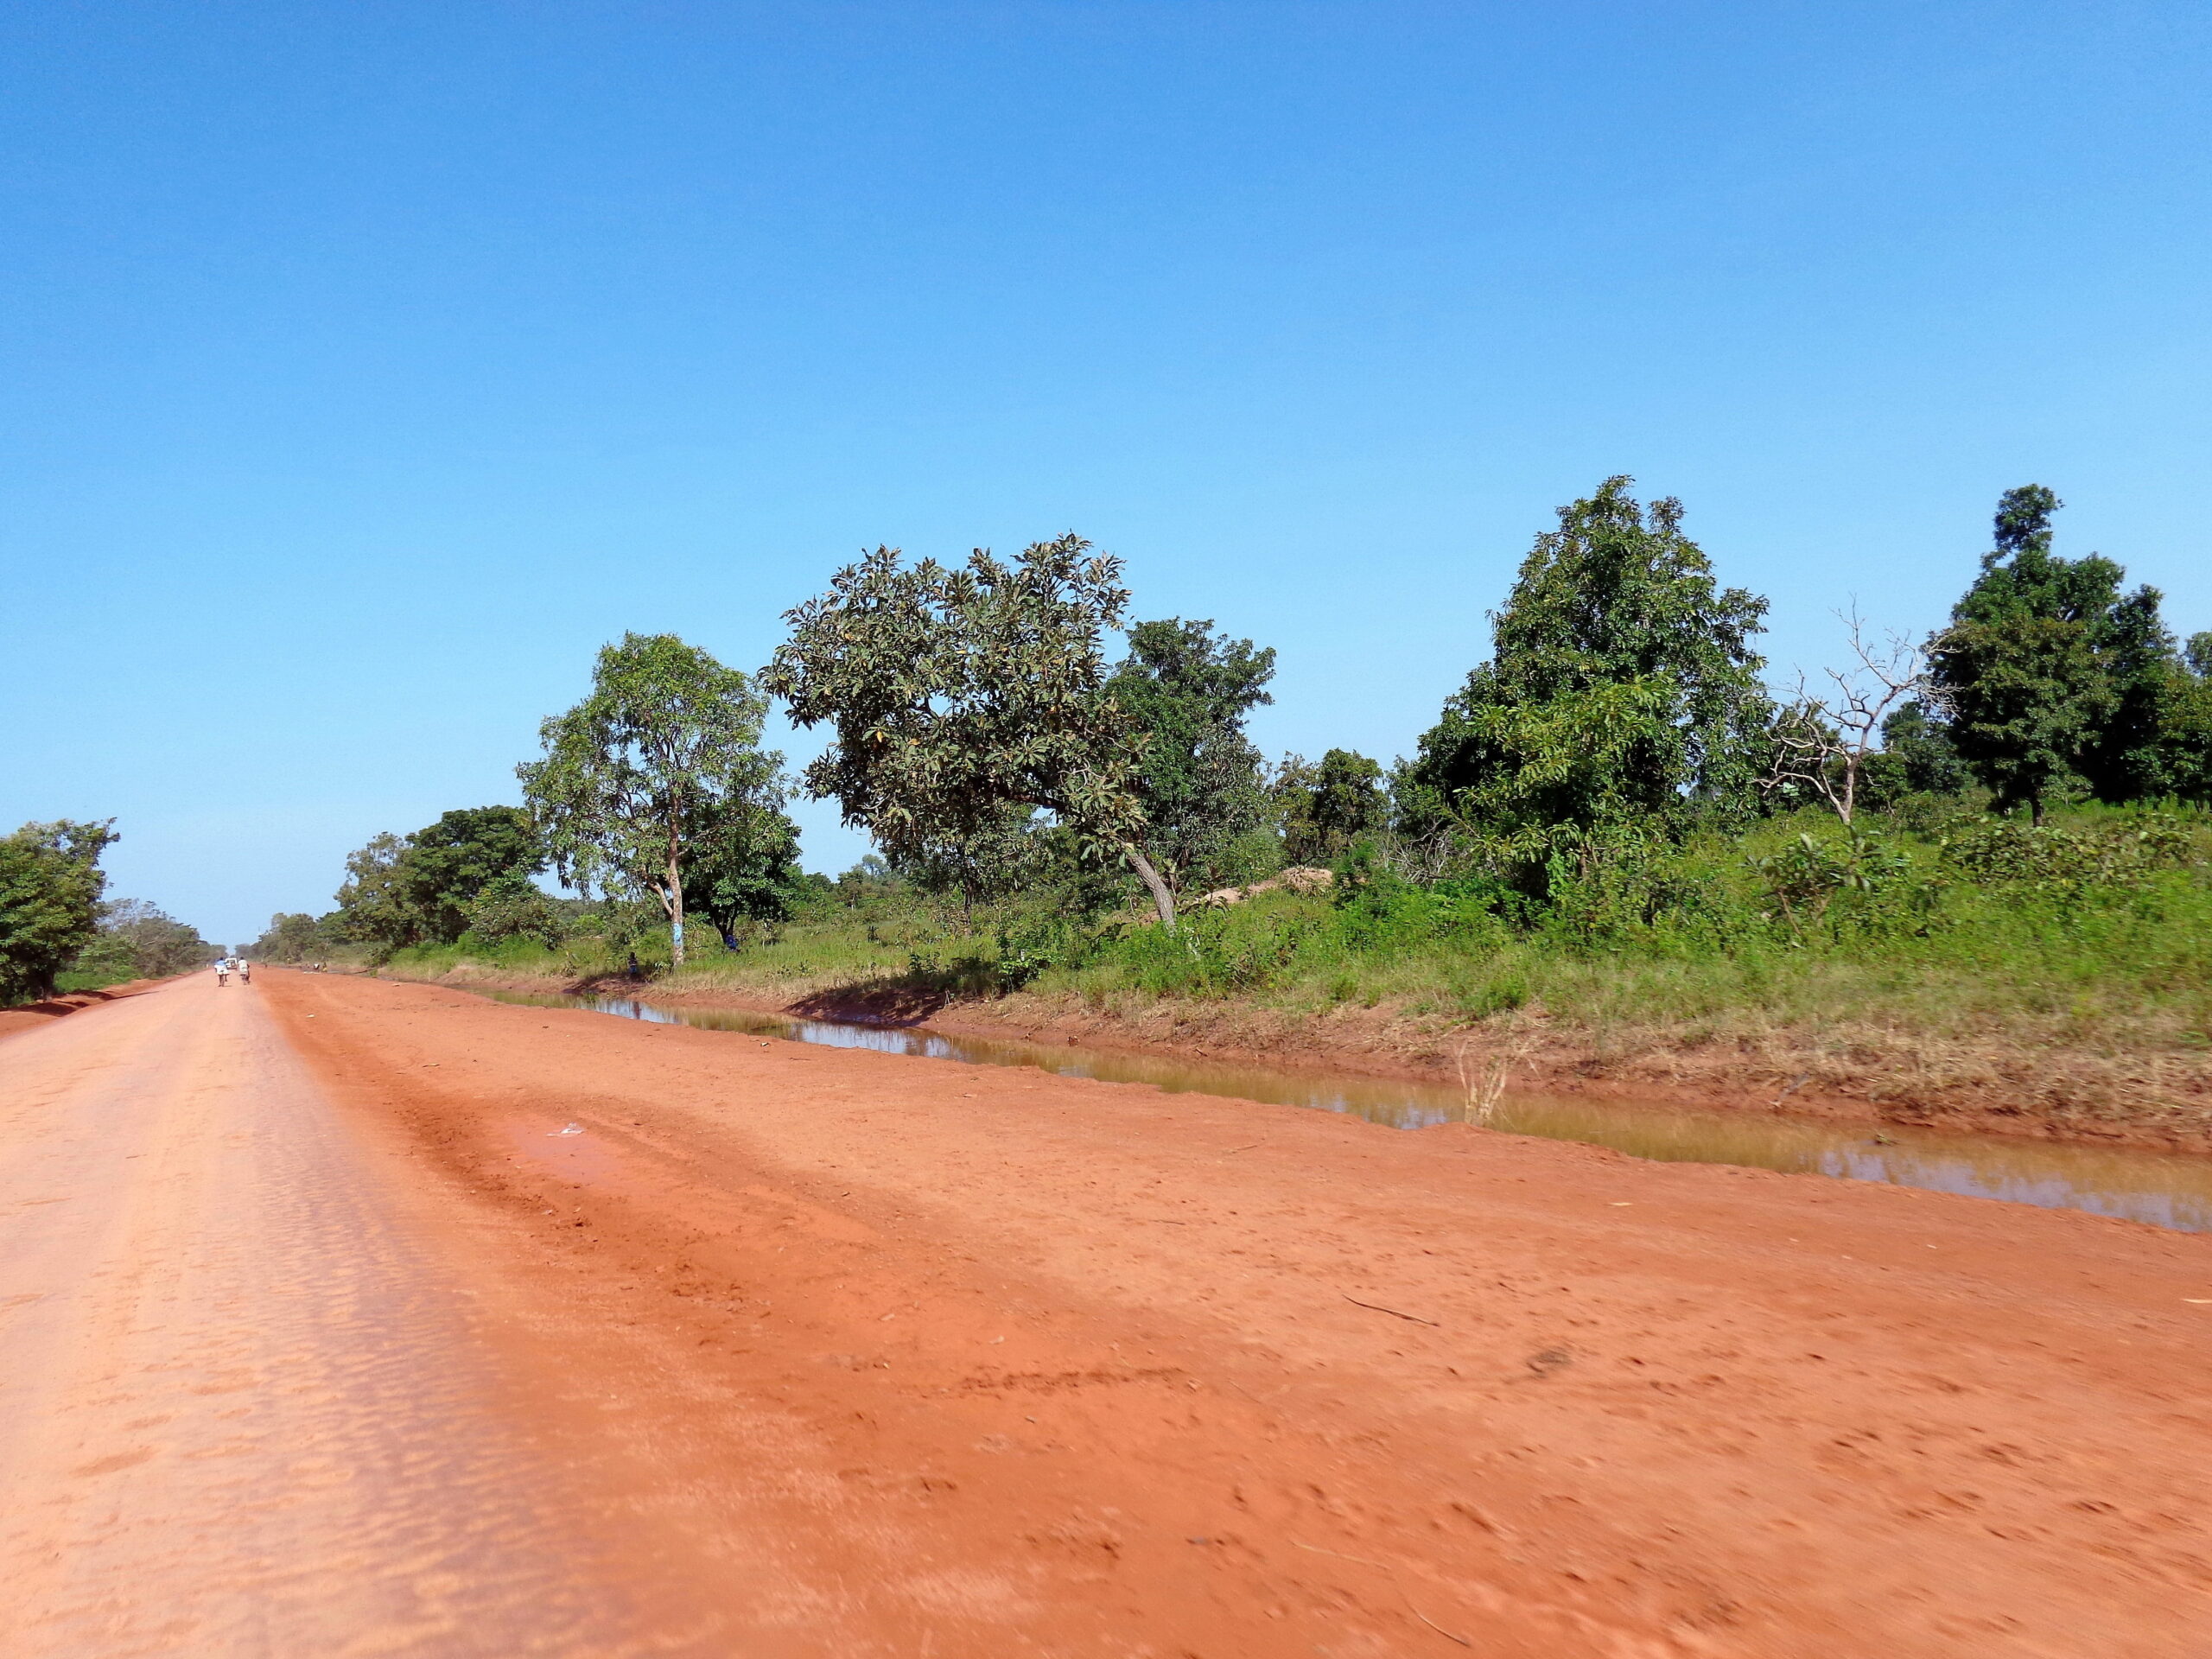 Route en terre rouge dans la campagne du Chad